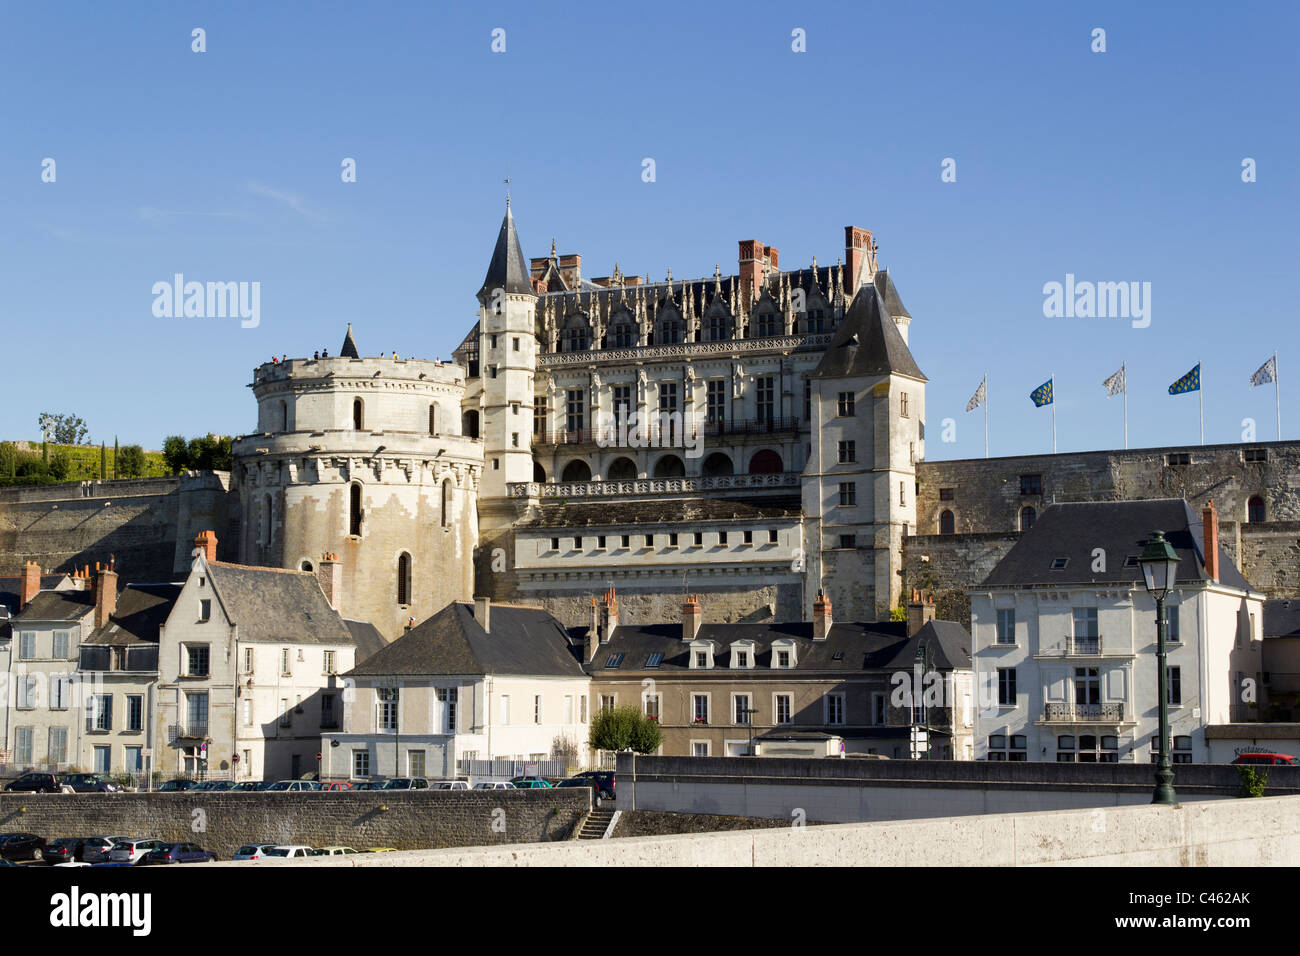 Historische Chateau d'Amboise, Amboise, Indre-et-Loire, Frankreich Stockfoto